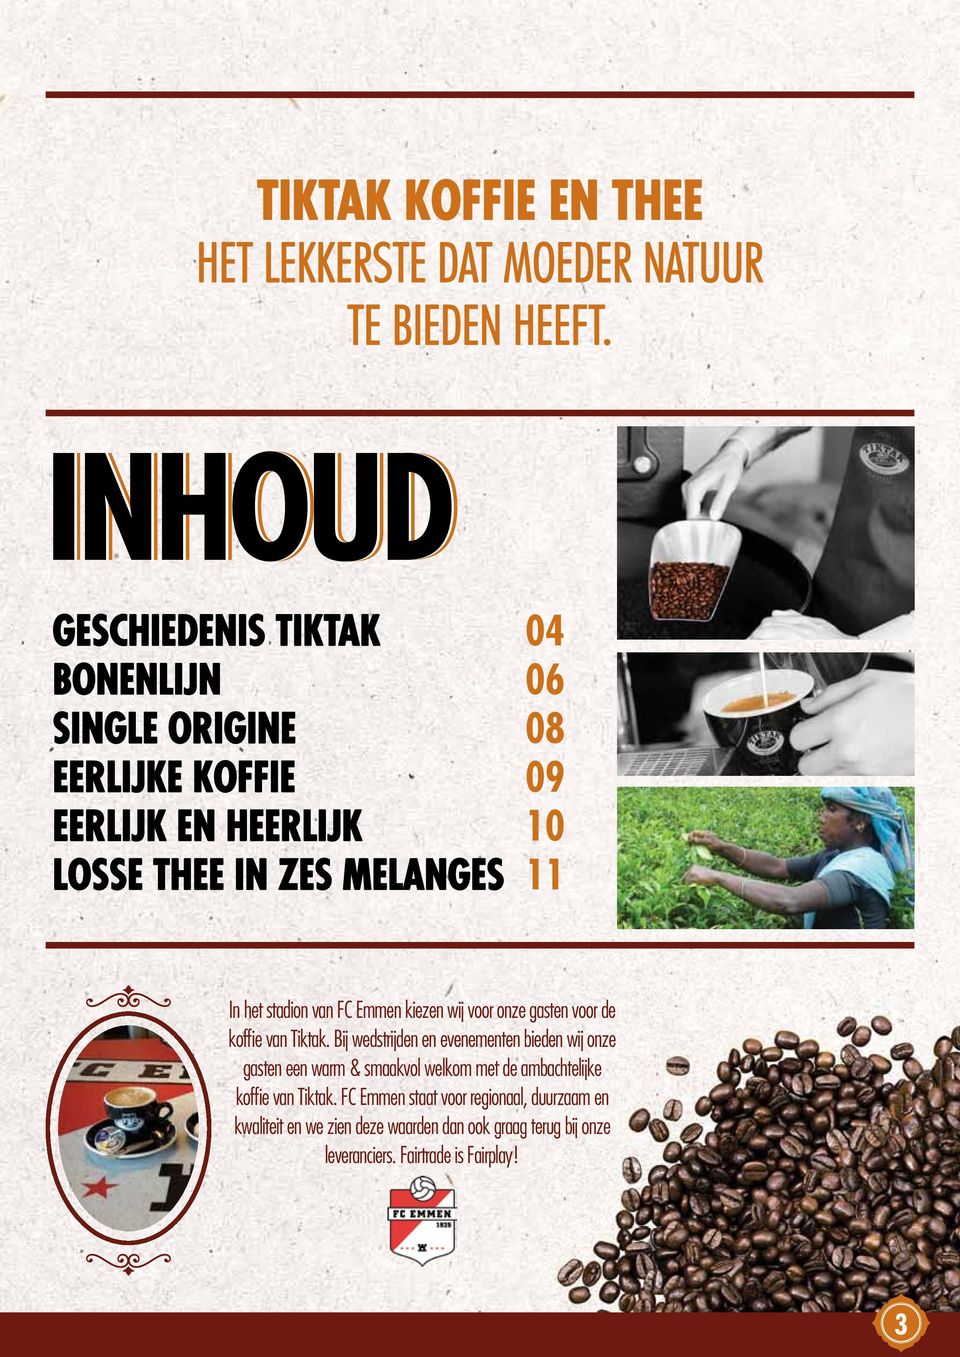 het stadion van FC Emmen kiezen wij voor onze gasten voor de koffi e van Tiktak.